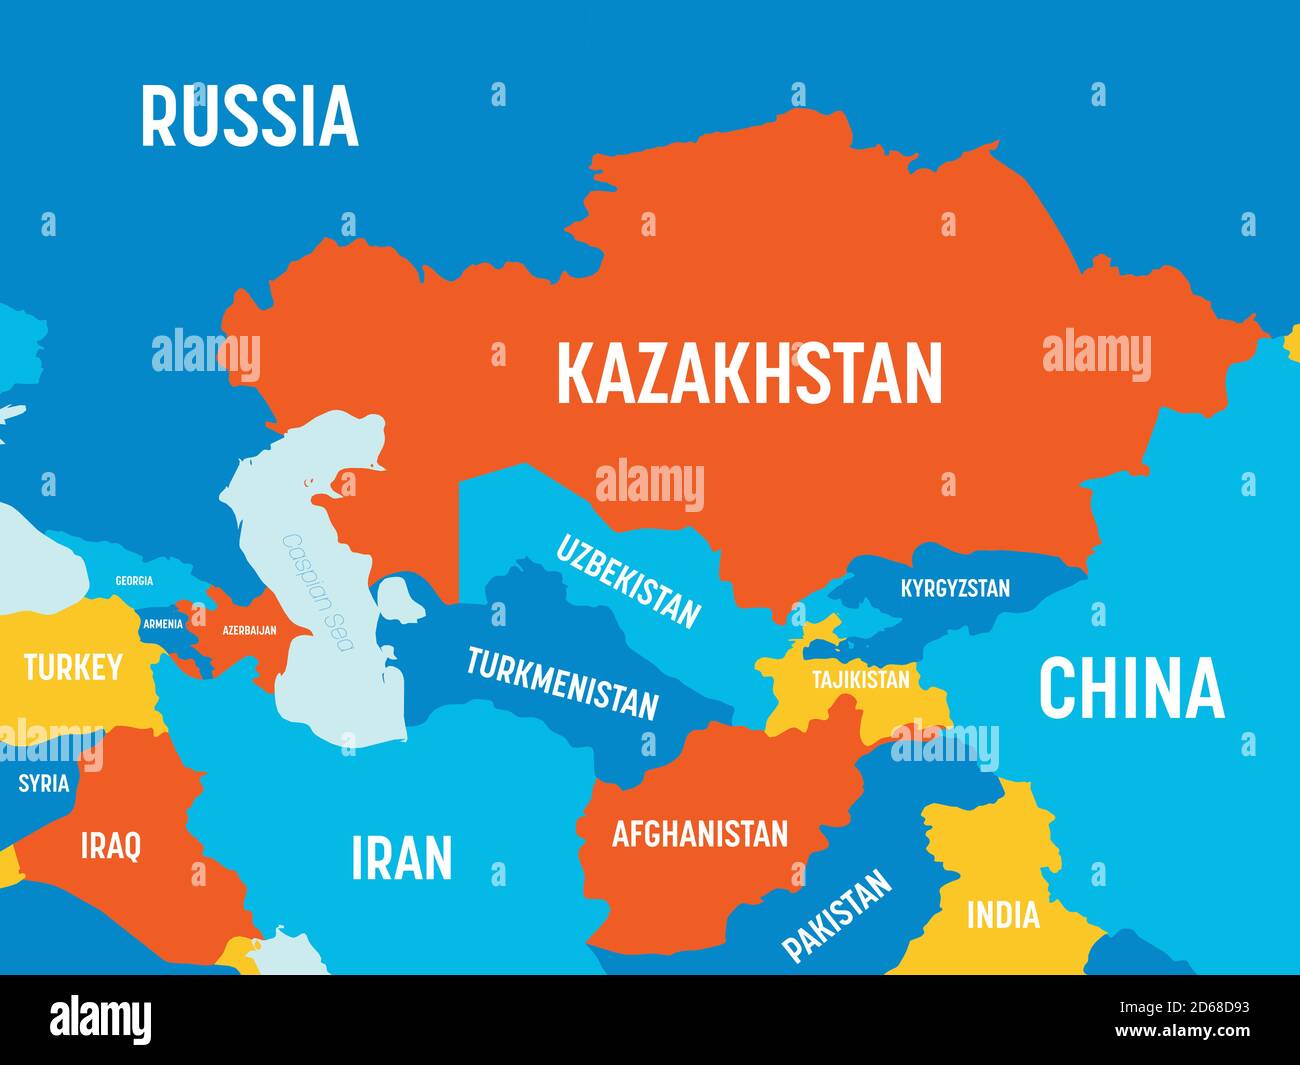 Zentralasienkarte In 4 Hellen Farben Hoch Detaillierte Politische Karte Der Zentralasiatischen Region Mit Land Meer Und Meeresnamen Kennzeichnung 2d68d93 